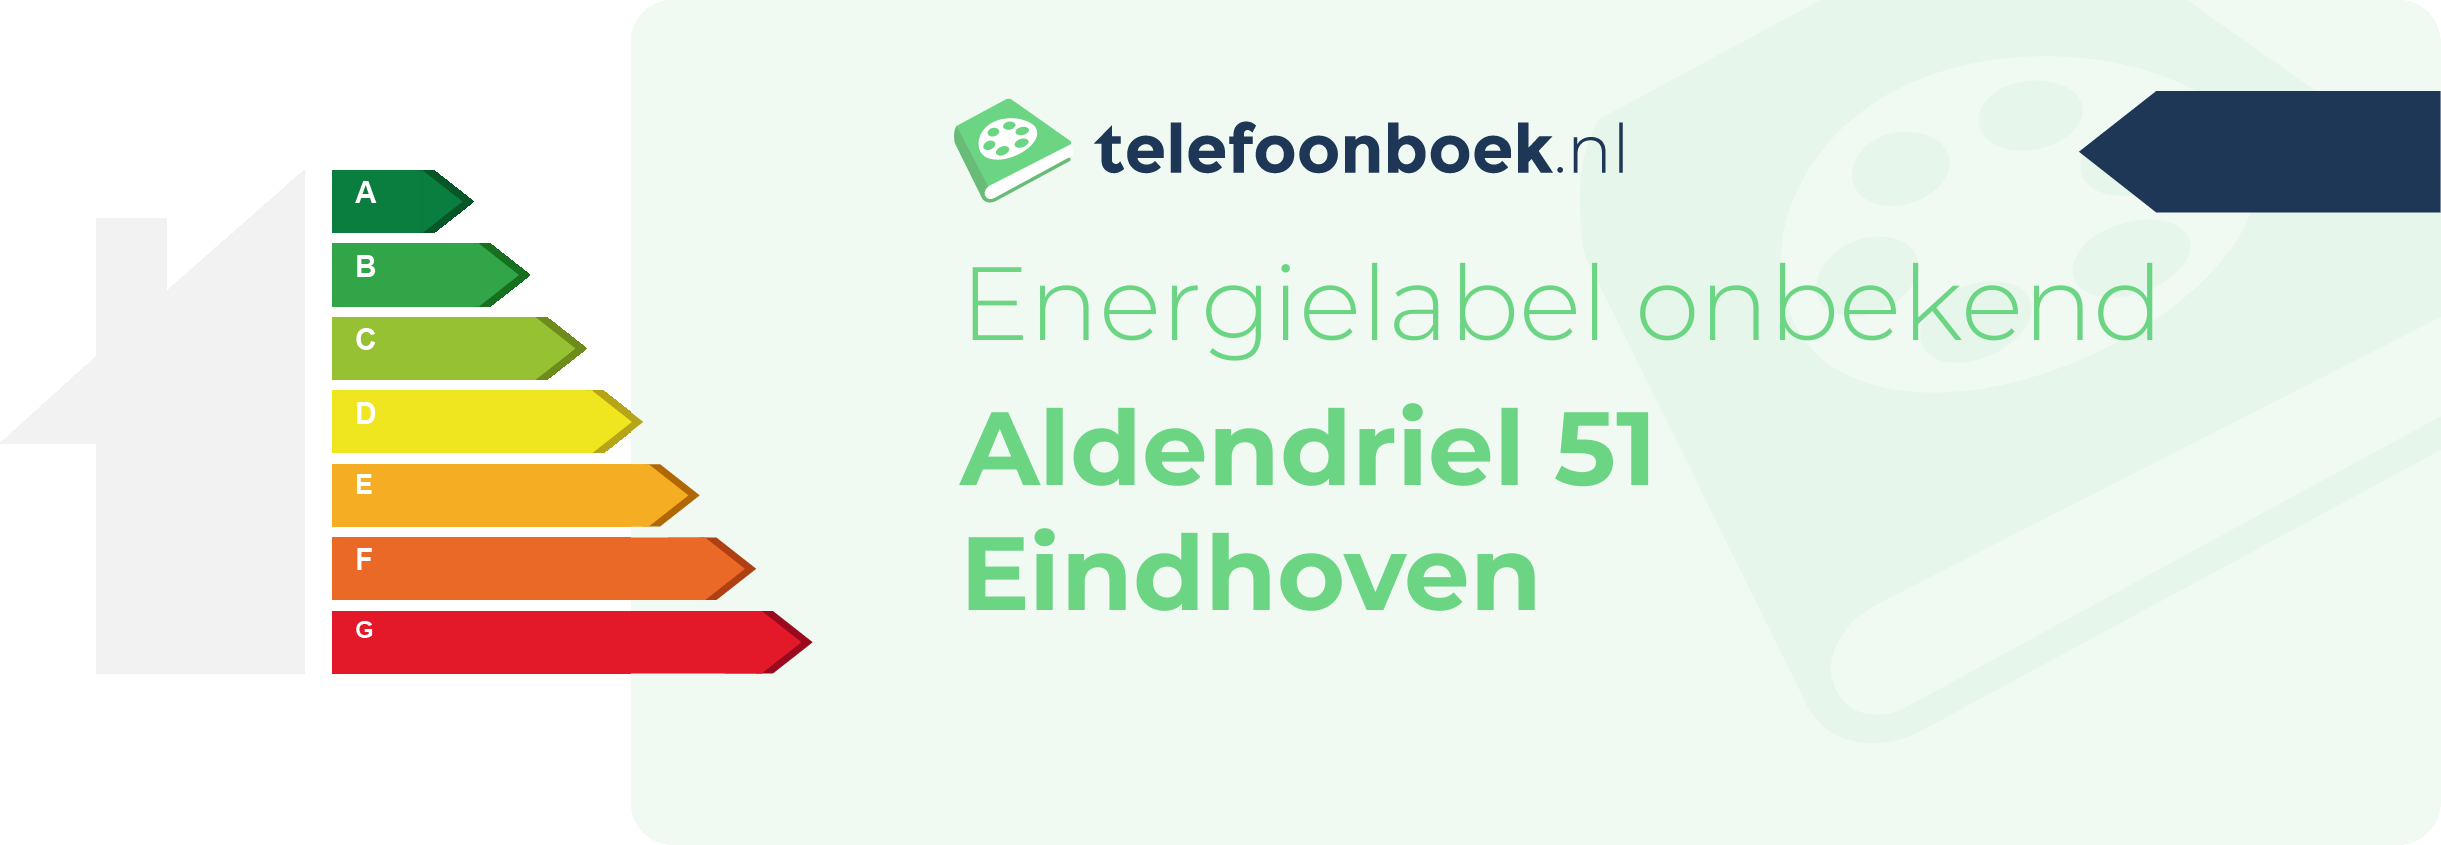 Energielabel Aldendriel 51 Eindhoven